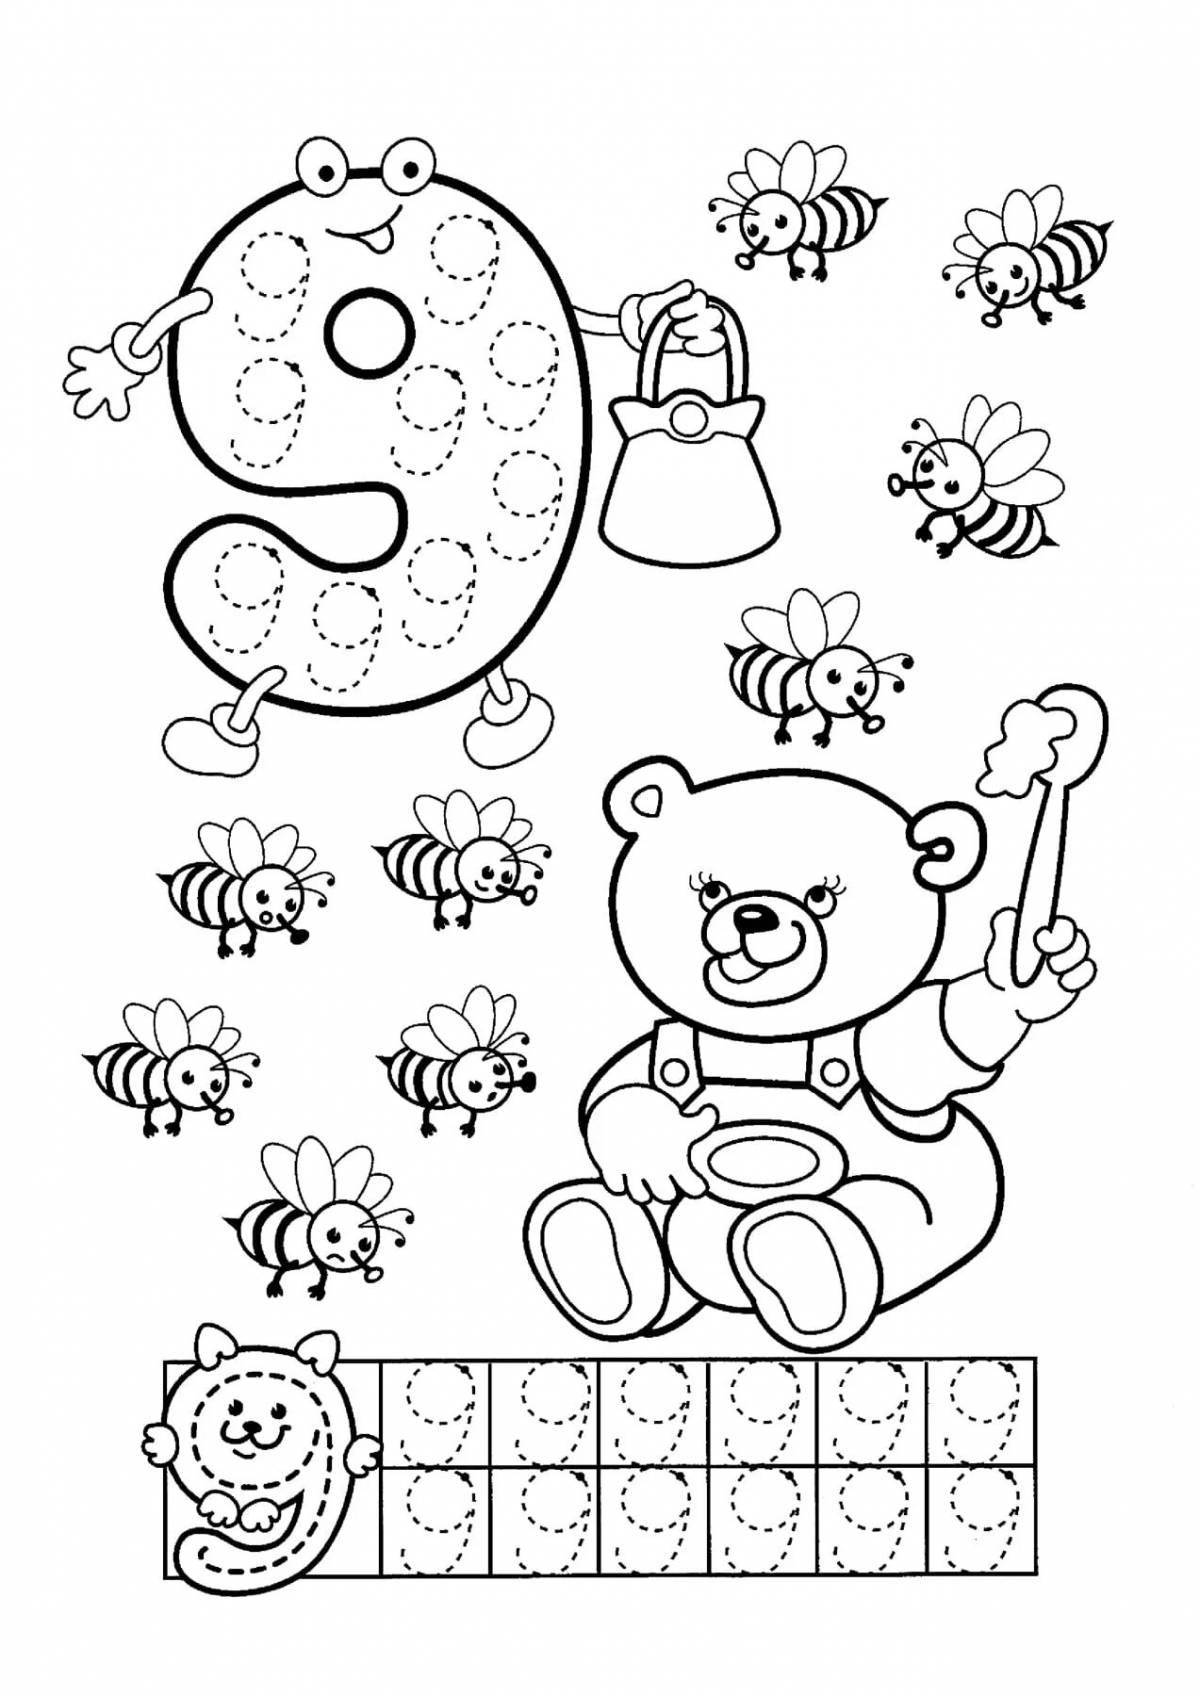 Увлекательная раскраска для детей 6-7 лет с буквами